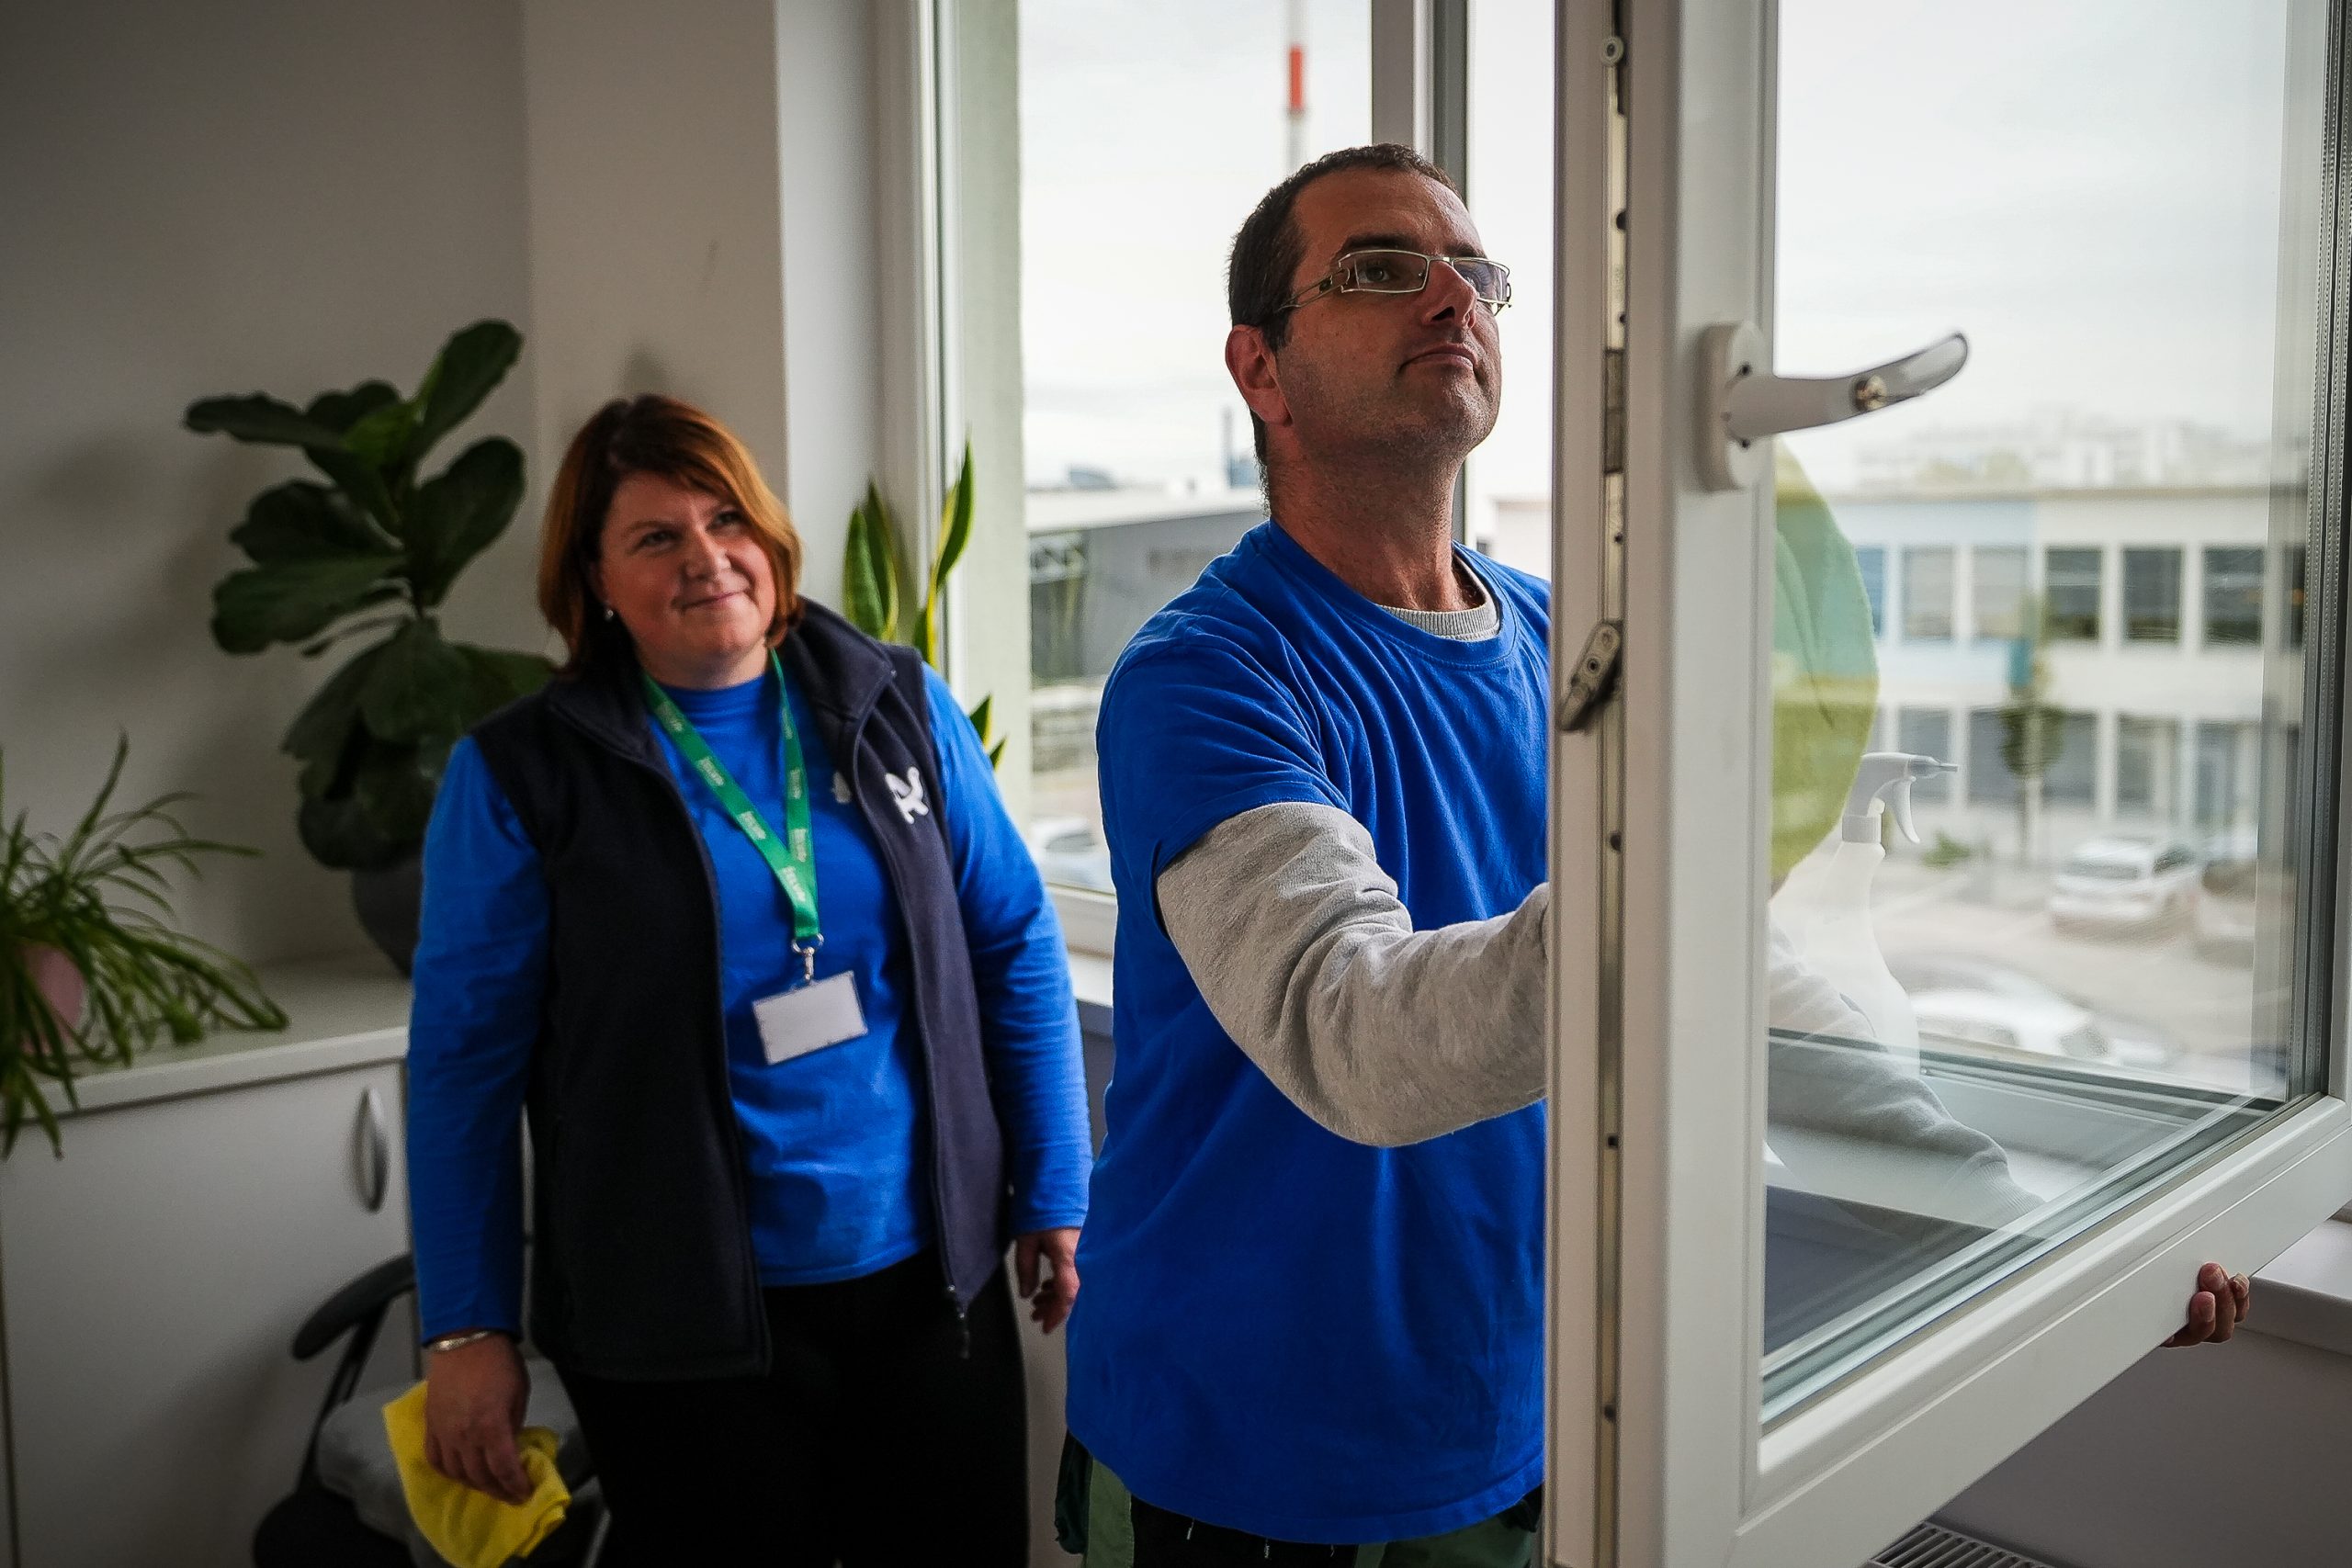 Nadzor opravljanja dela čiščenja oken v oddelku Čistilni servis